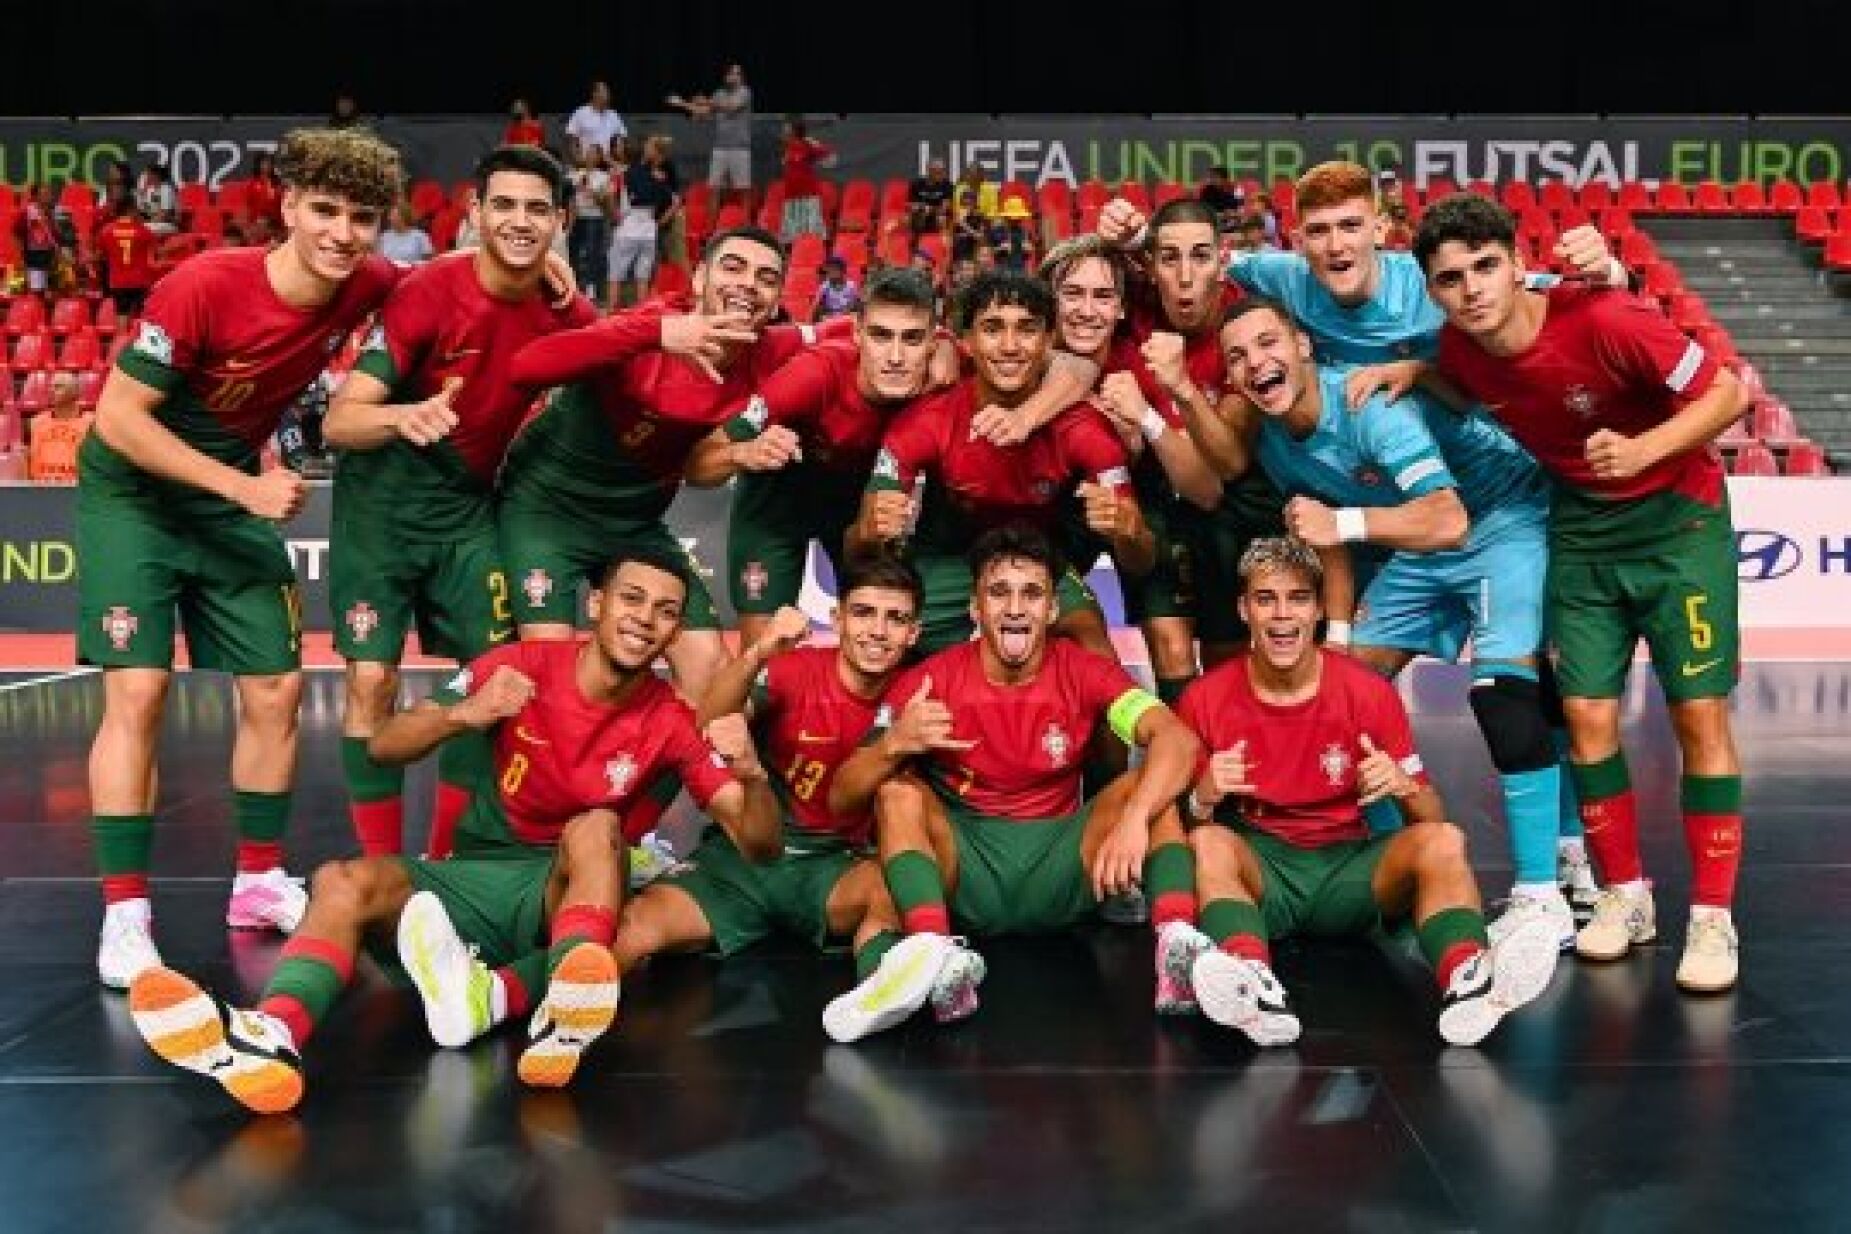 Jogos Preparação Portugal x Espanha (Sub-19) :: Photos 